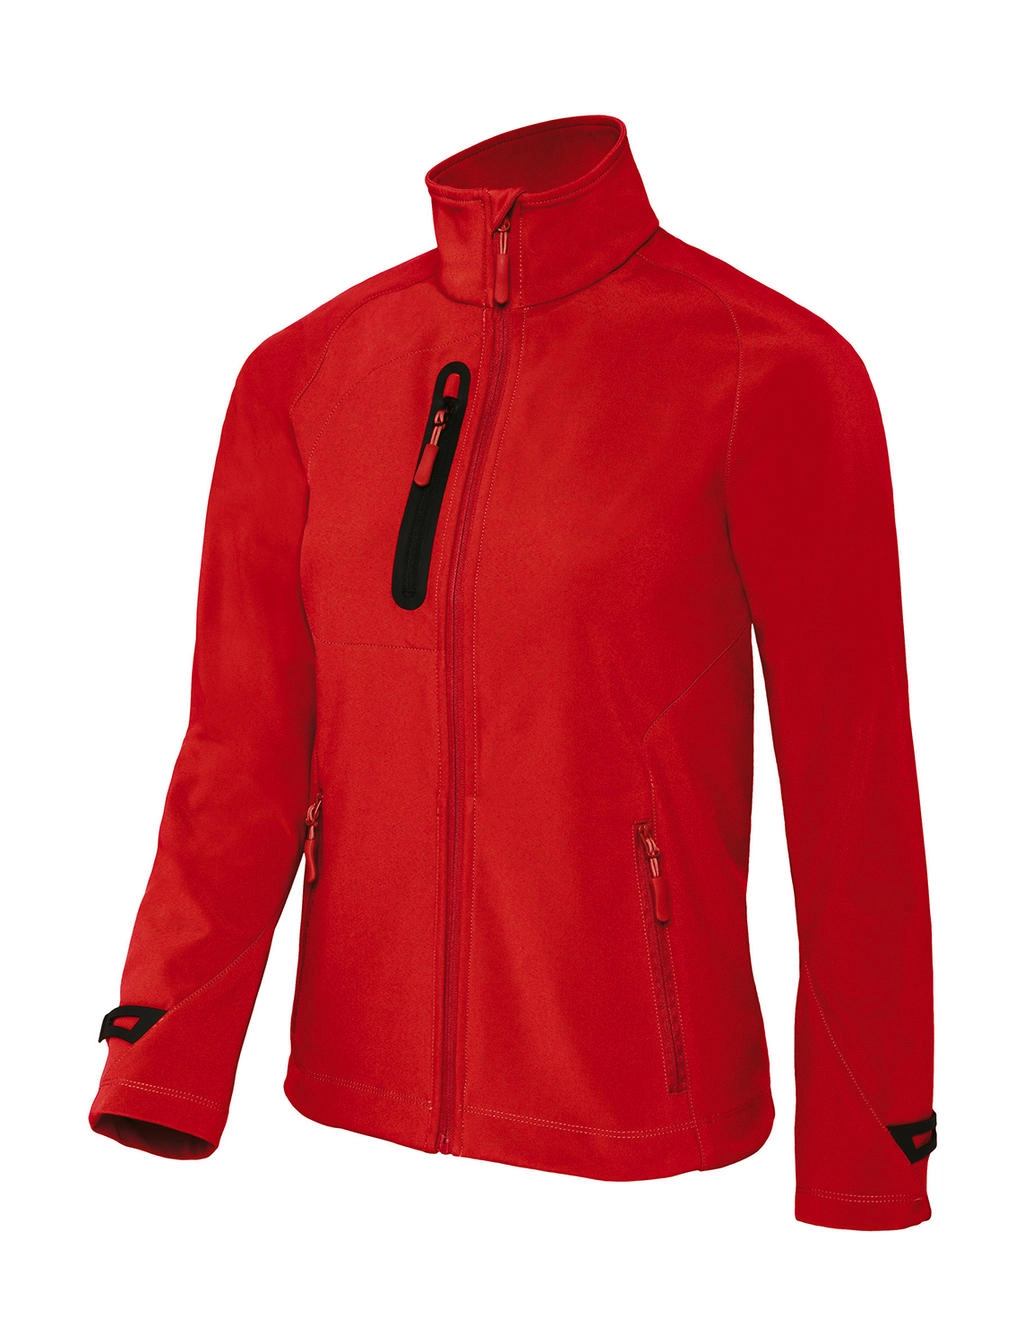 X-Lite Softshell/women Jacket zum Besticken und Bedrucken in der Farbe Deep Red mit Ihren Logo, Schriftzug oder Motiv.